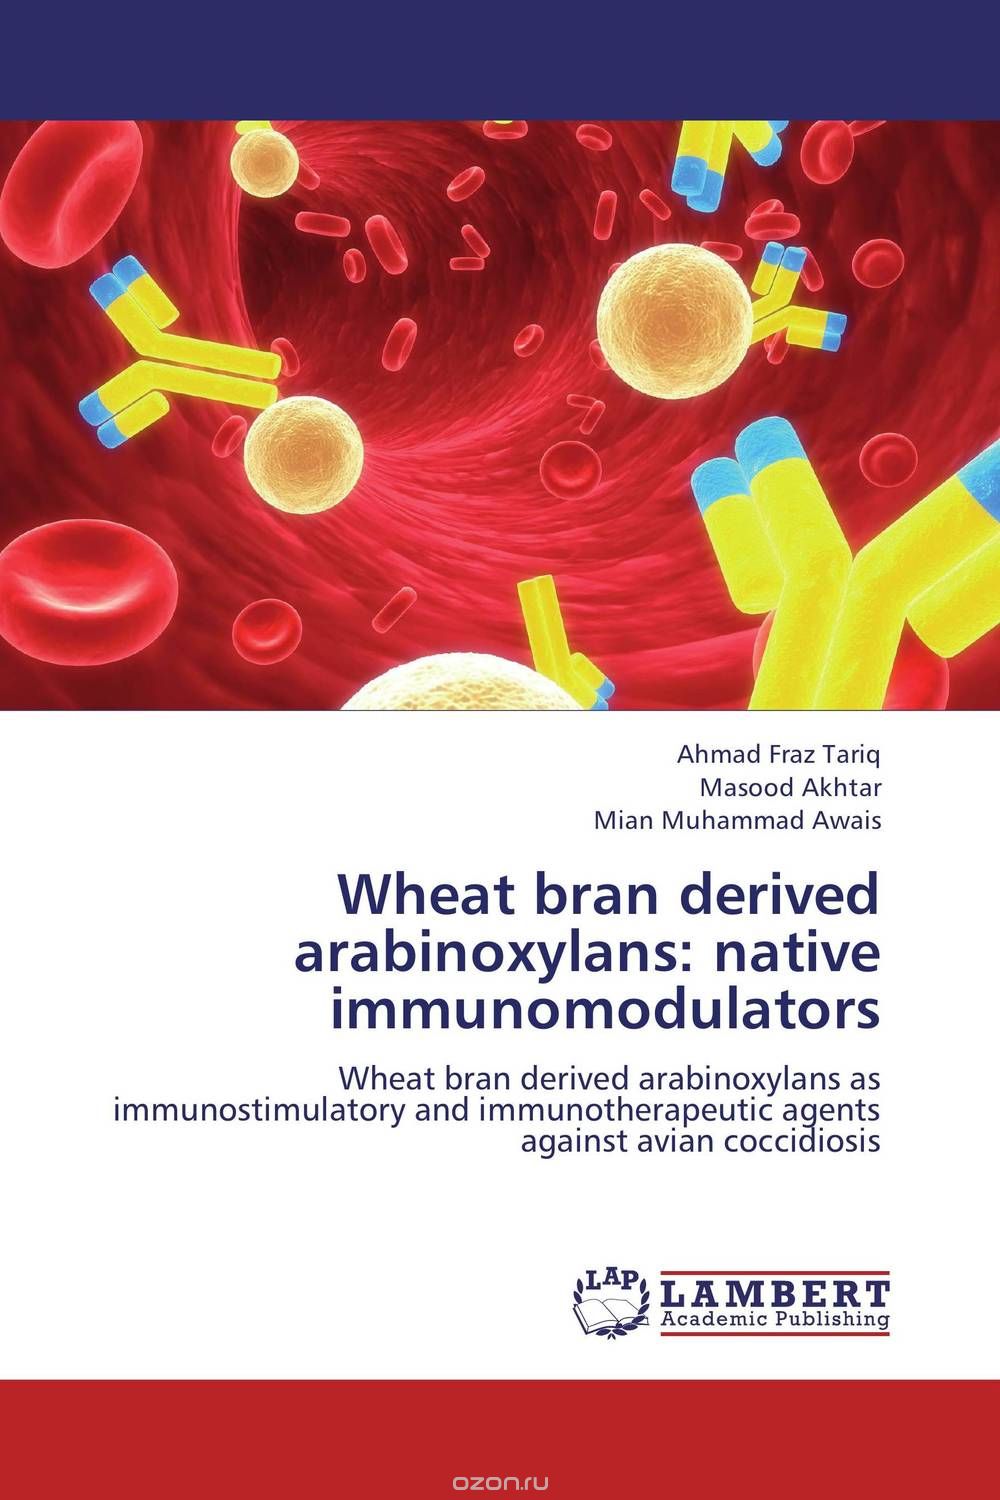 Скачать книгу "Wheat bran derived arabinoxylans: native immunomodulators"